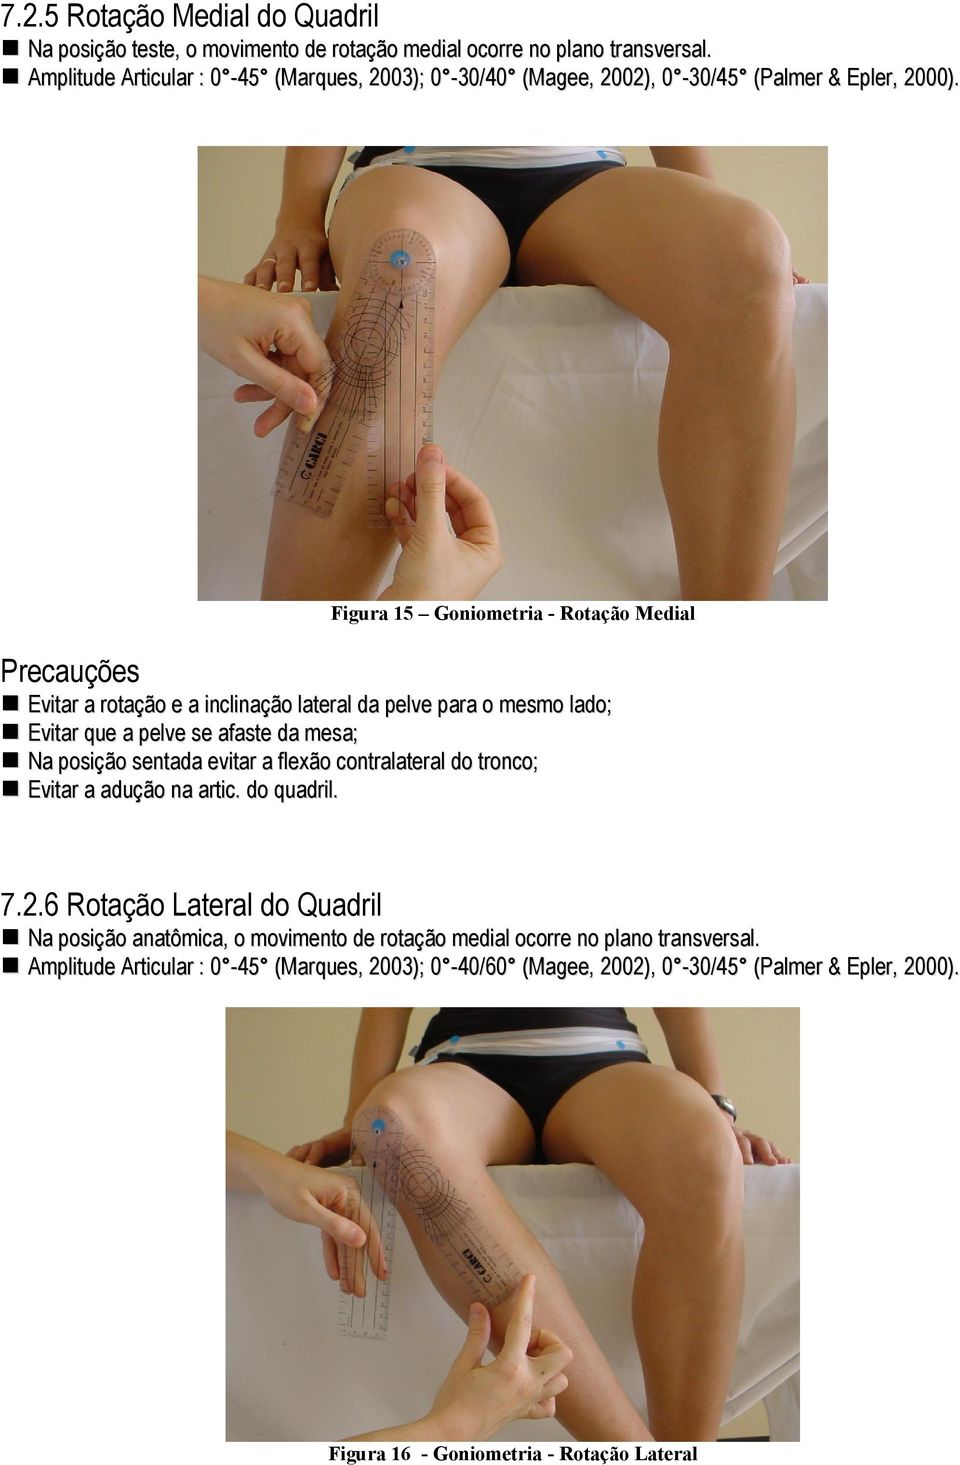 Figura 15 Goniometria - Rotação Medial Precauções Evitar a rotação e a inclinação lateral da pelve para o mesmo lado; Evitar que a pelve se afaste da mesa; Na posição sentada